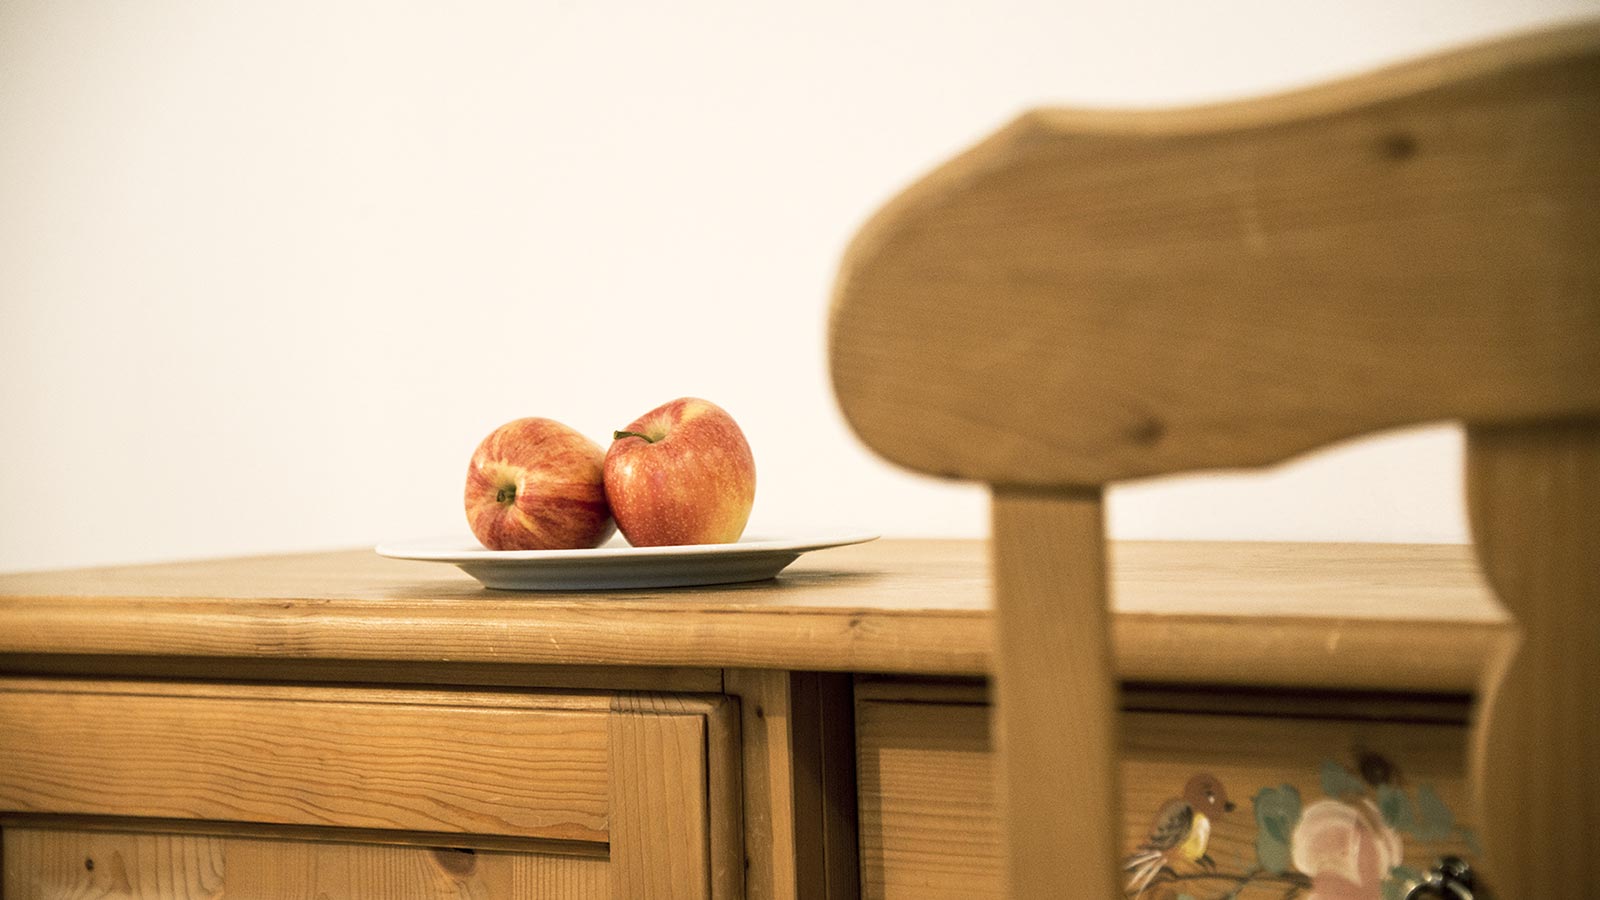 Nahaufnahme von einem Holzkästchen, auf dem ein Teller mit zwei roten Äpfeln liegt und der Lehne eines Holzsessels